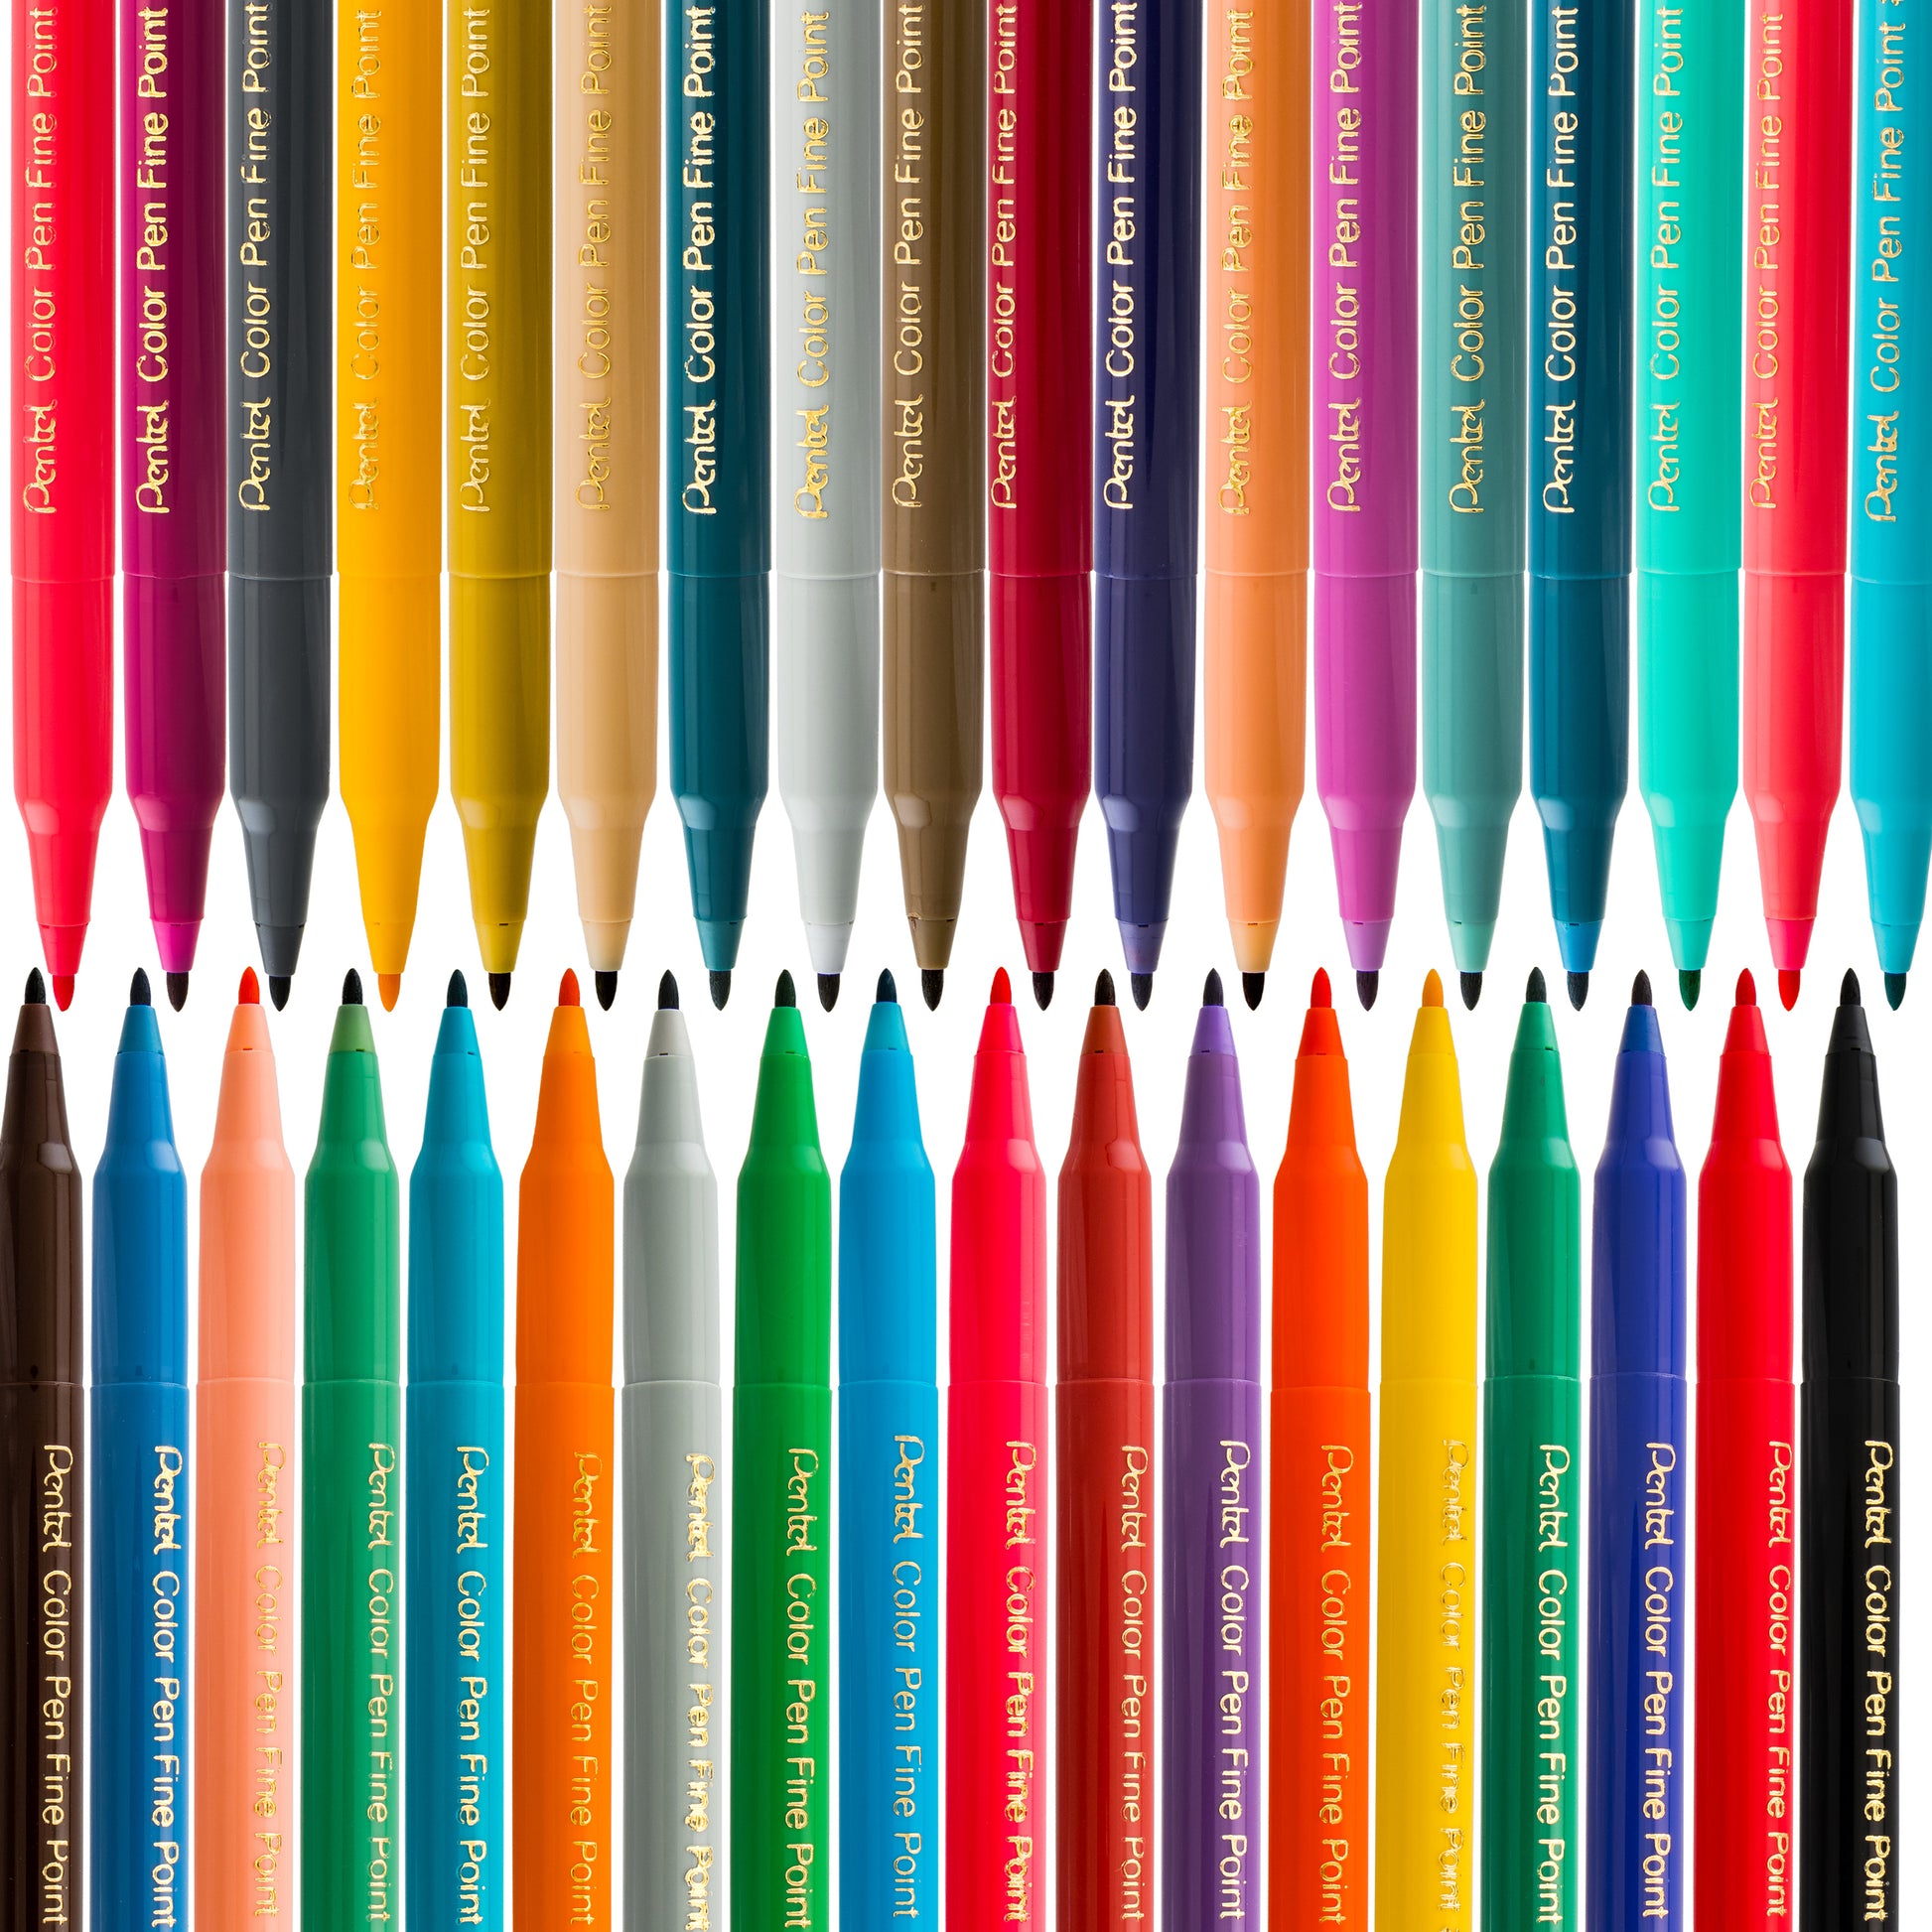 Pentel® 12 Color Pencil Set